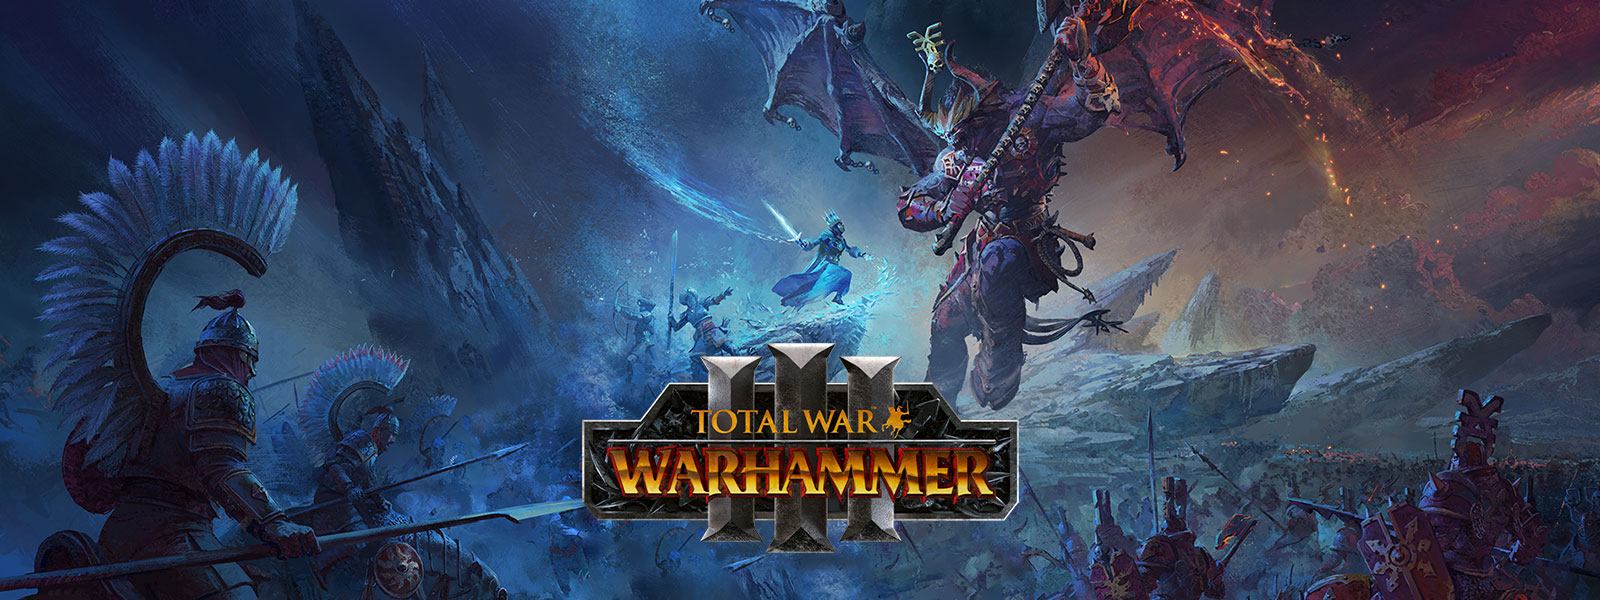 Total War Warhammer 3, jäävelho kohtaa jättimäisen lohikäärmedemonin taistelukentän yläpuolella.